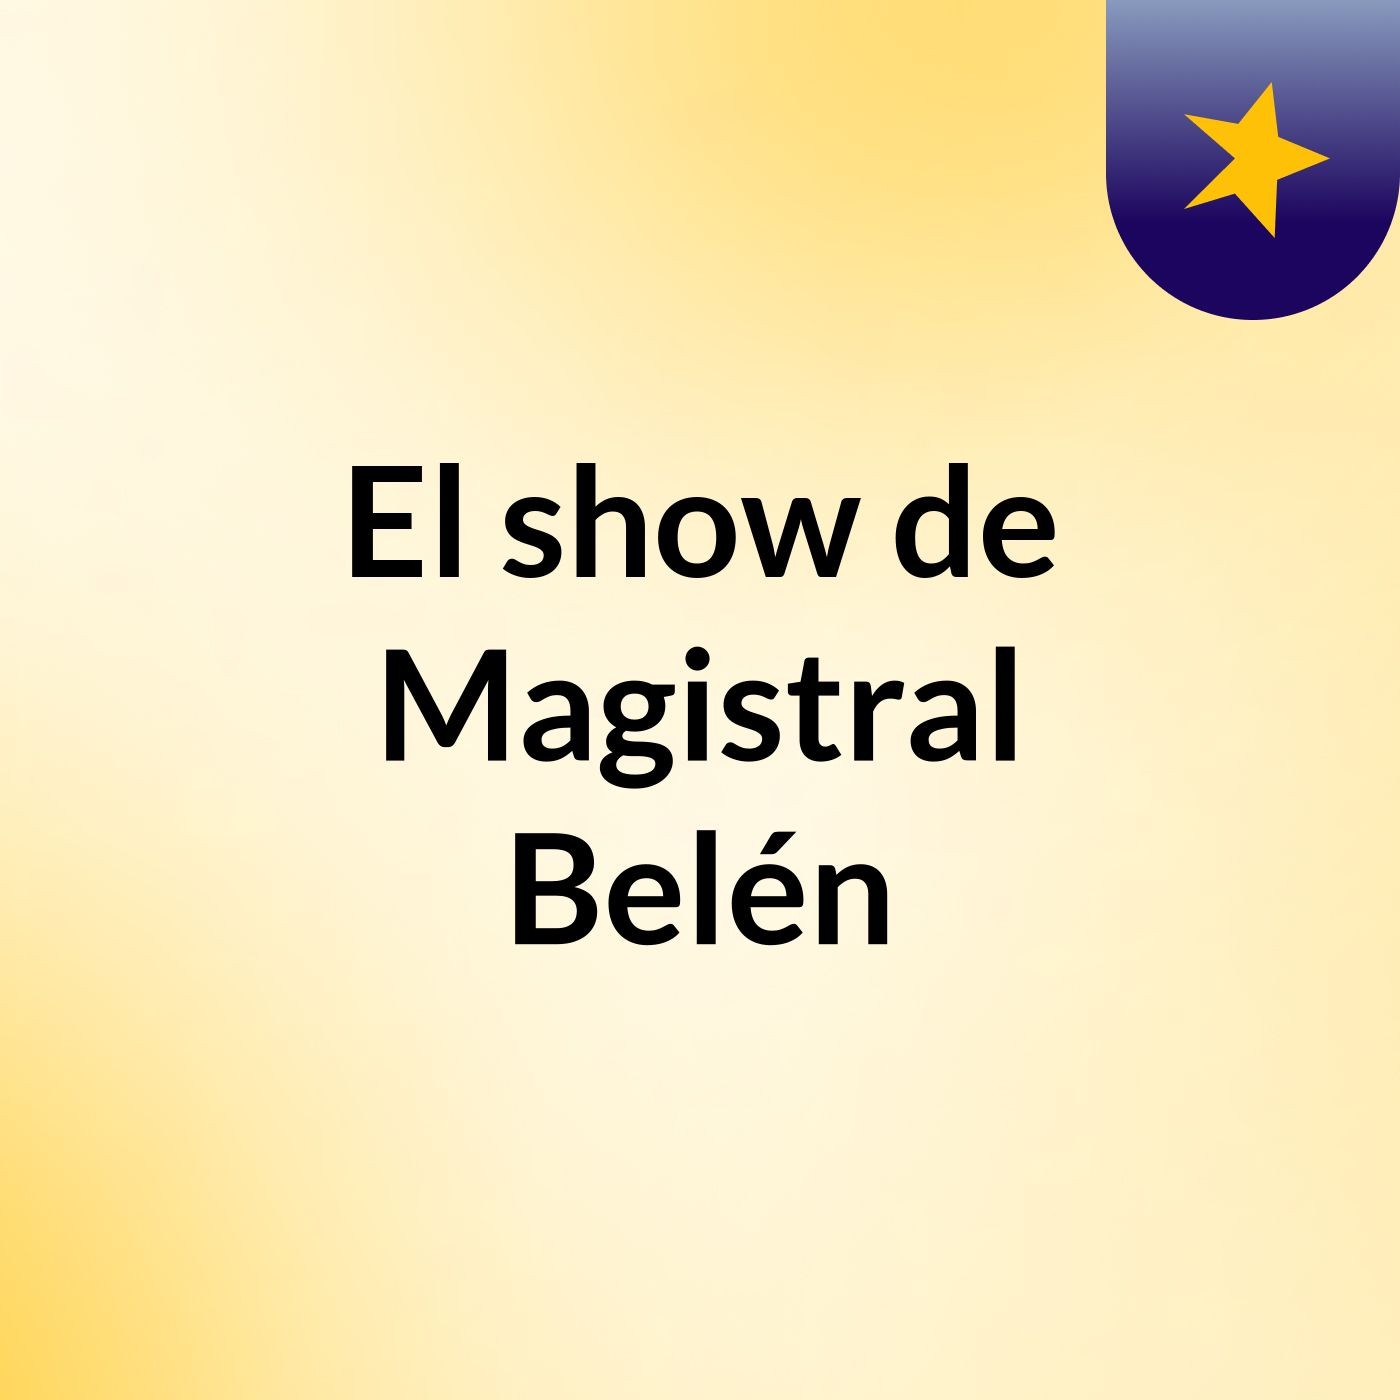 El show de Magistral Belén